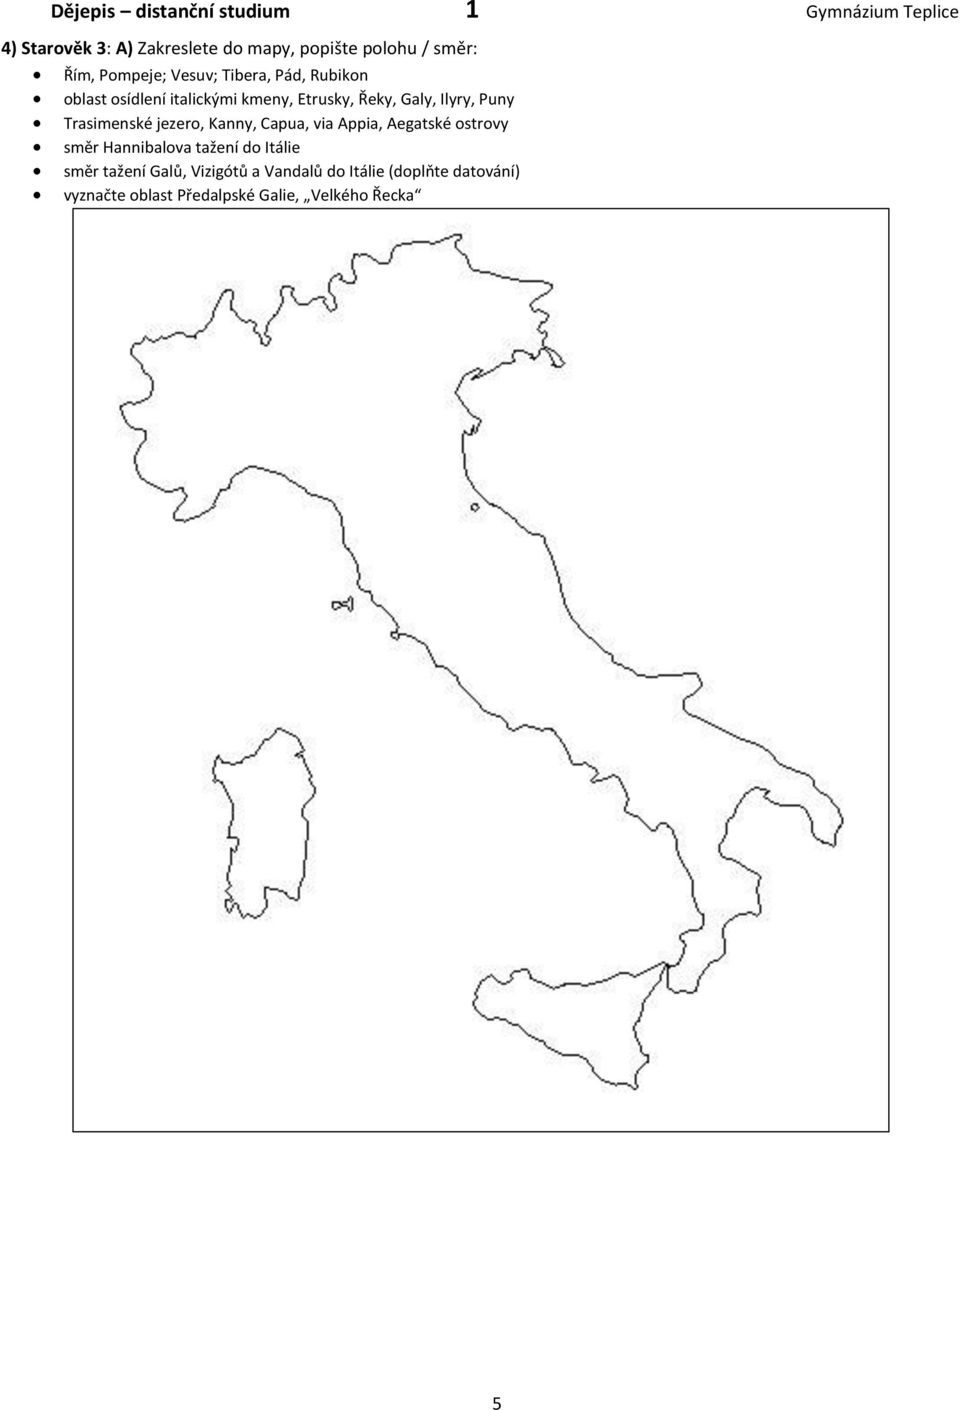 Kanny, Capua, via Appia, Aegatské ostrovy směr Hannibalova tažení do Itálie směr tažení Galů,